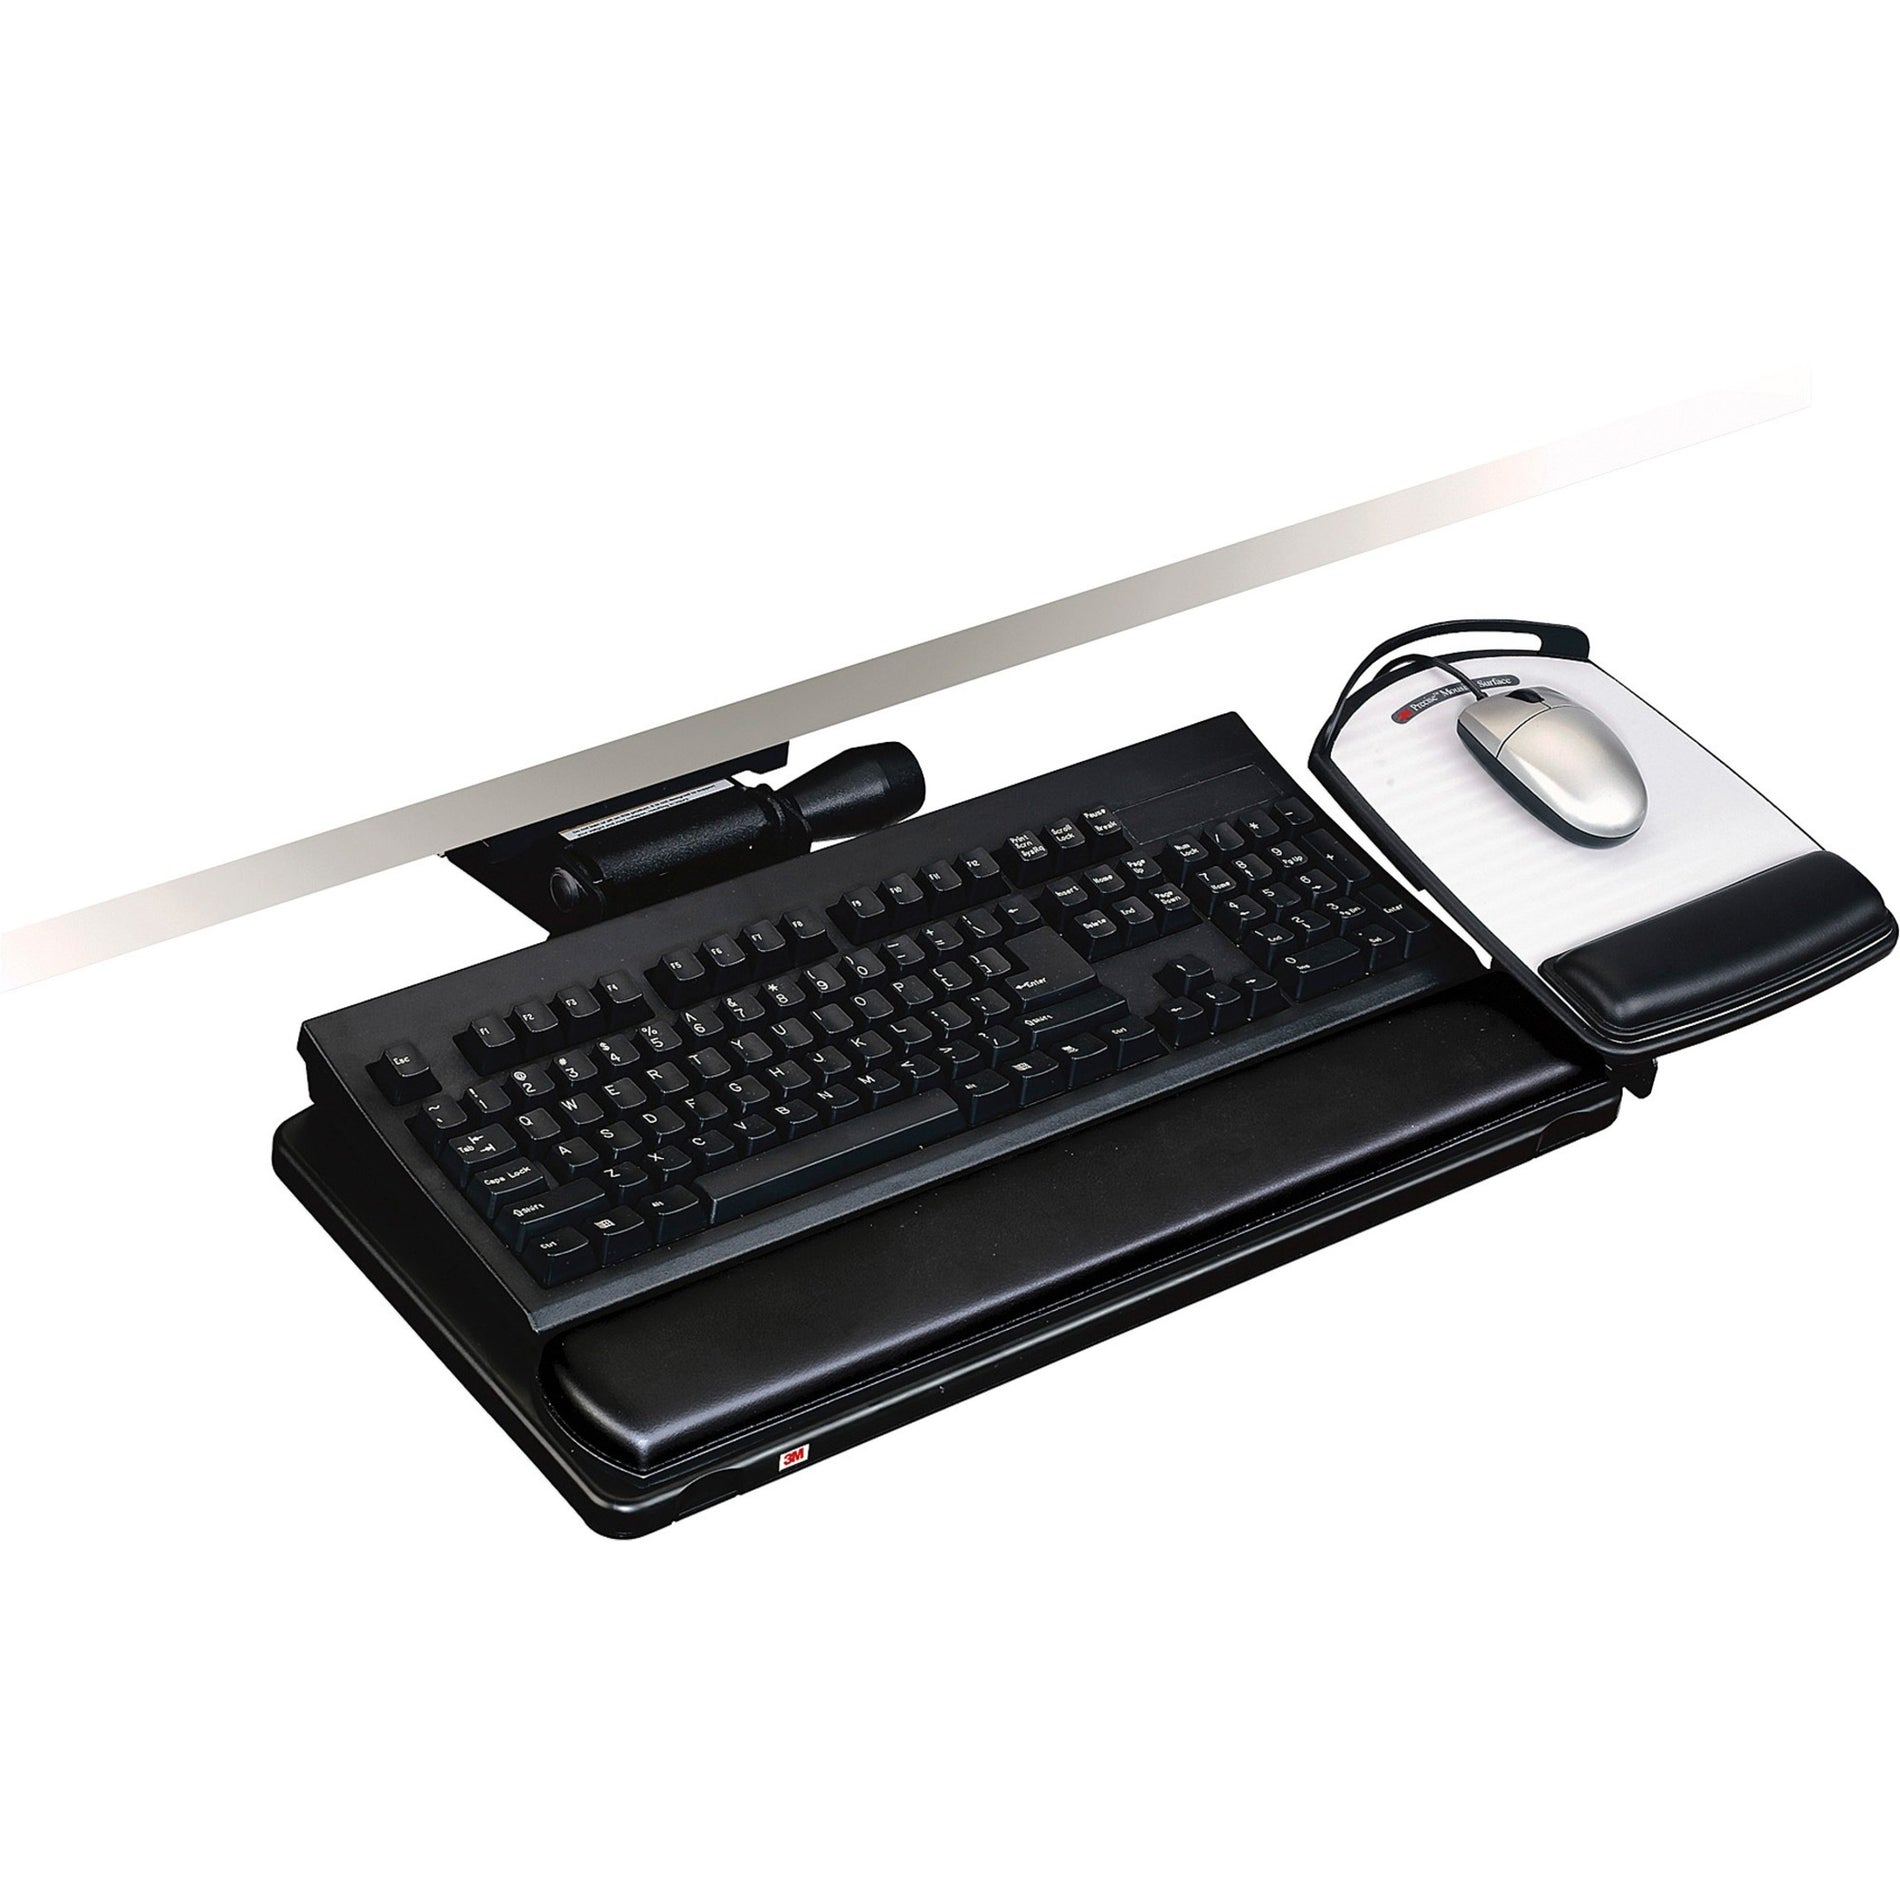 3M AKT150LE Easy Adjust Keyboard Tray Platform Gel Wrist Rests Precise Mouse Pad, Black